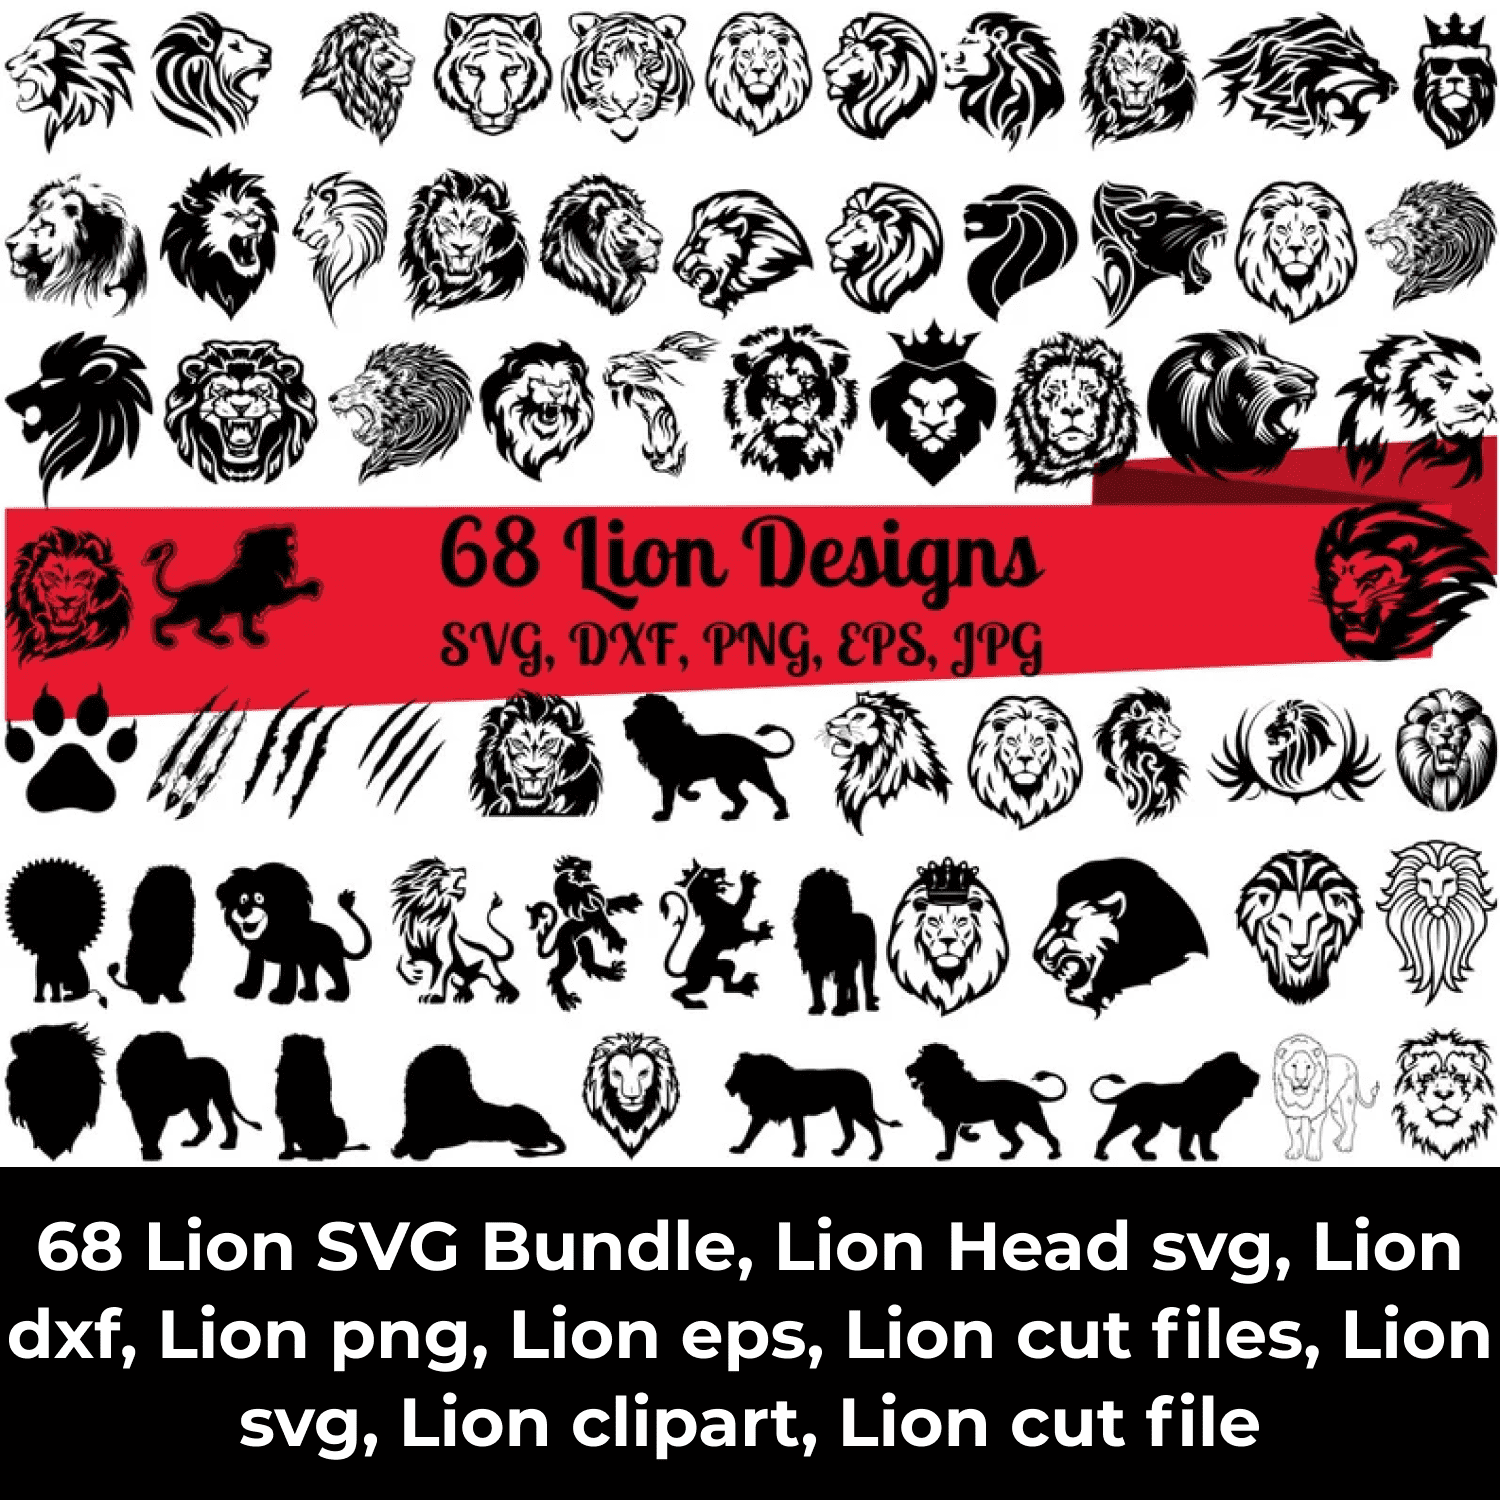 68 Lion SVG Bundle cover image.